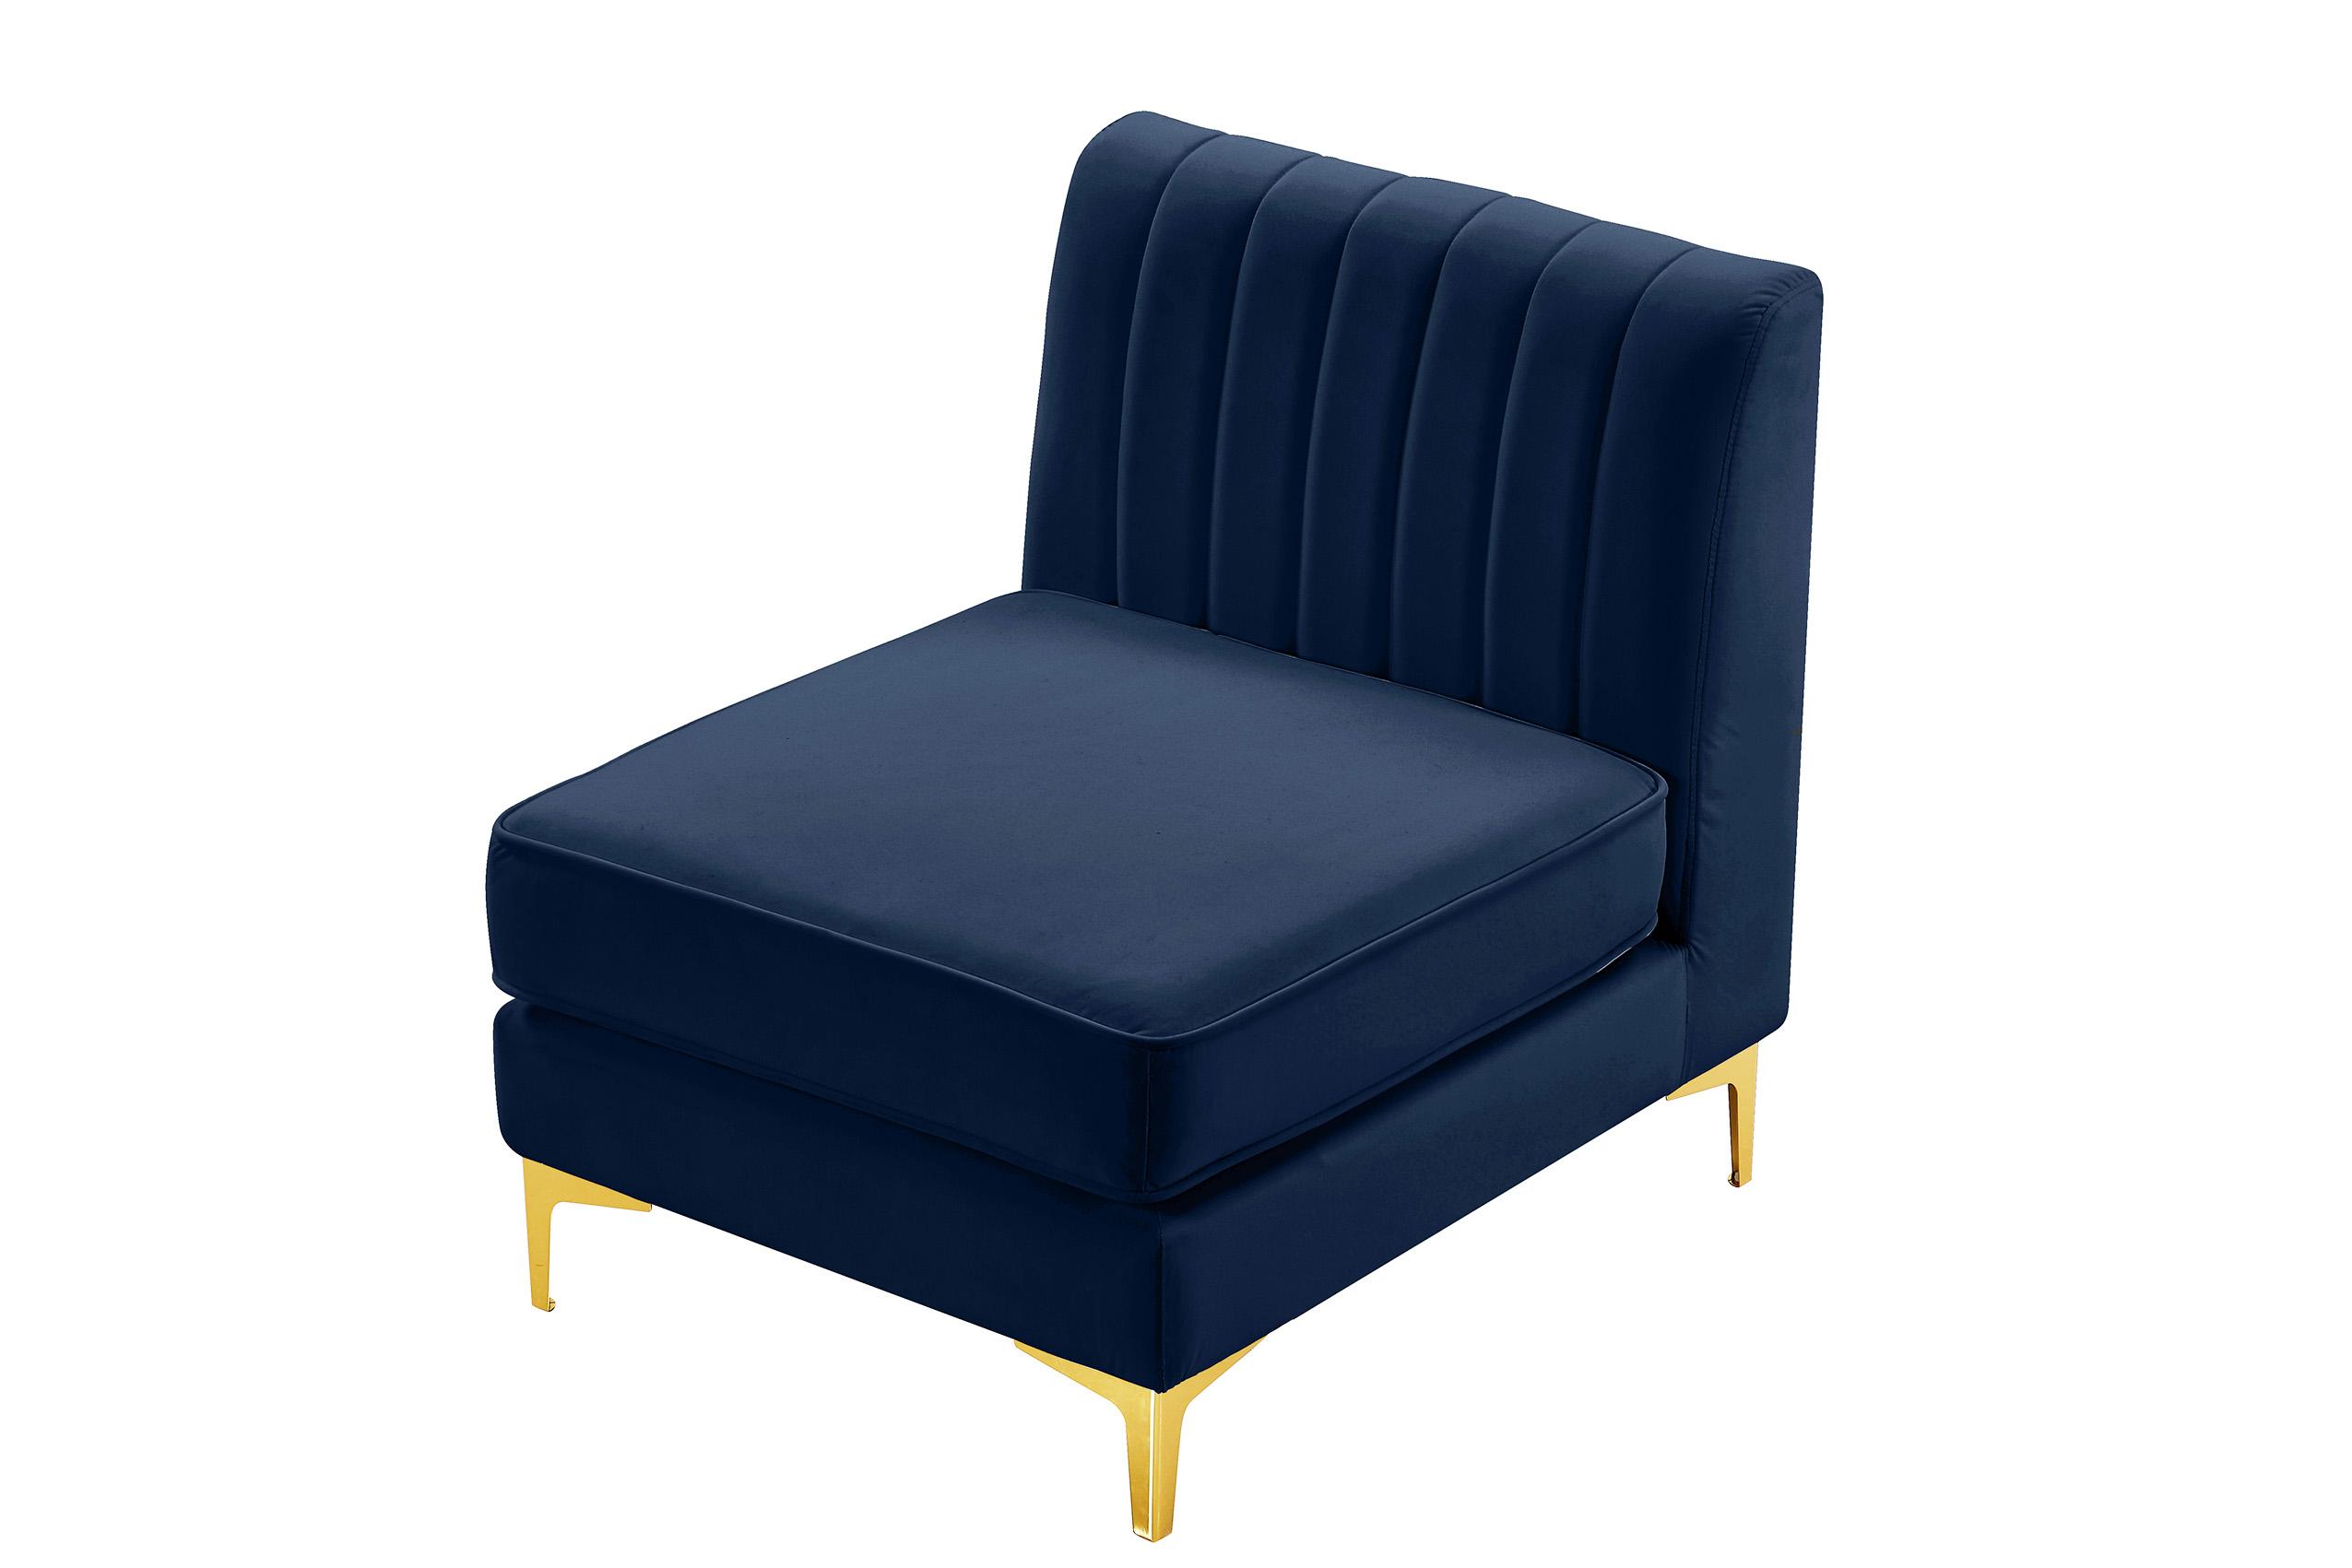 

    
Meridian Furniture ALINA 604Navy-Armless Modular Armless Chair Navy 604Navy-Armless
